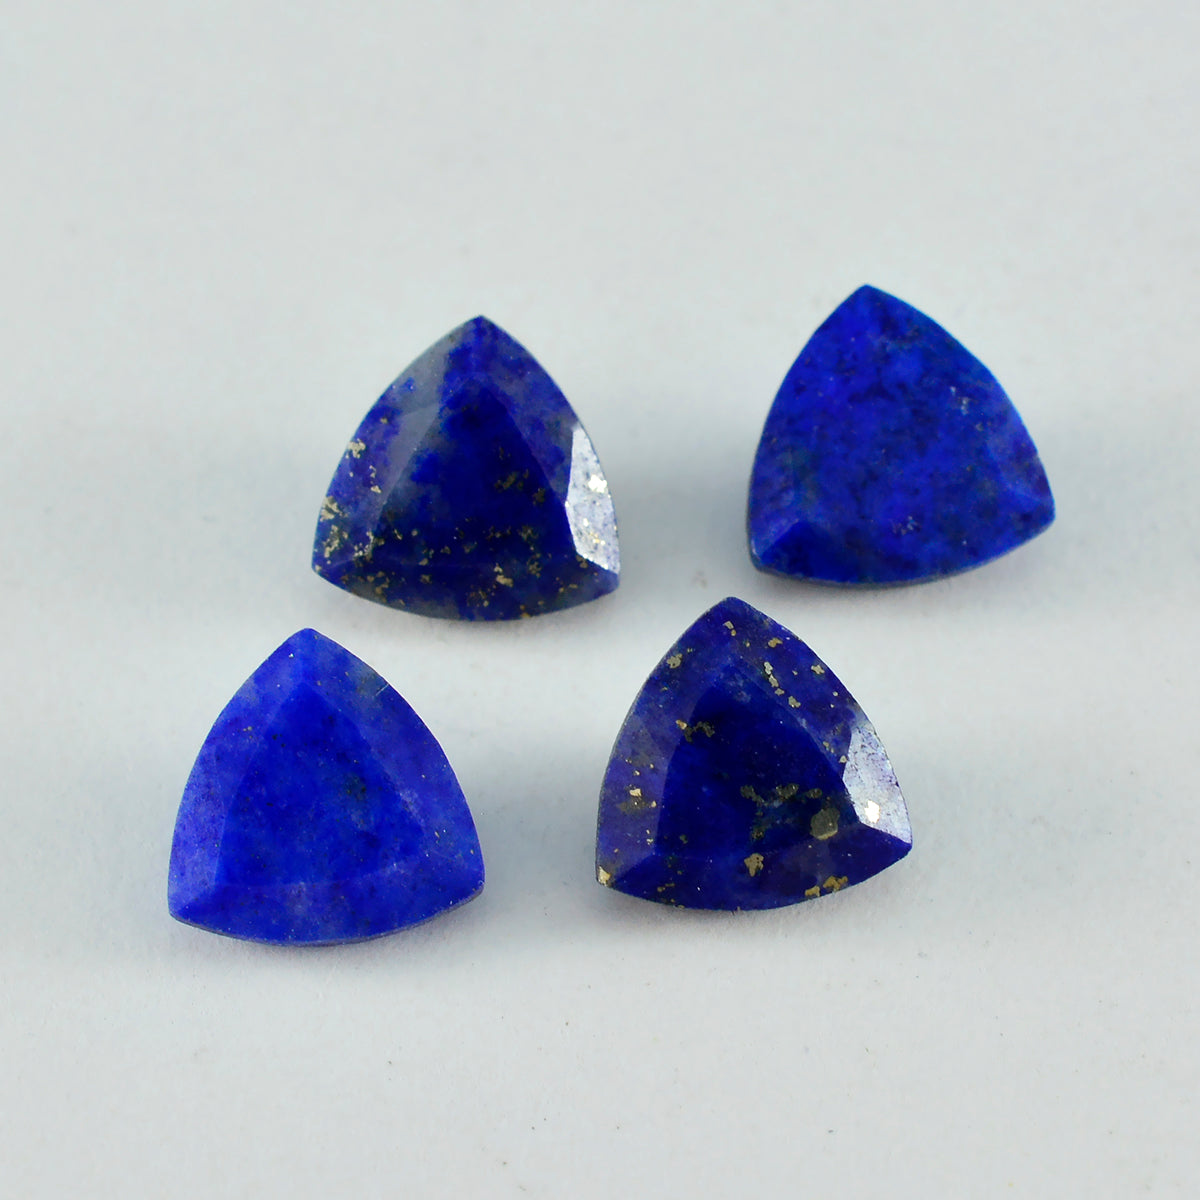 riyogems 1 шт. натуральный синий лазурит ограненный 14x14 мм форма триллион + 1 качество свободный драгоценный камень